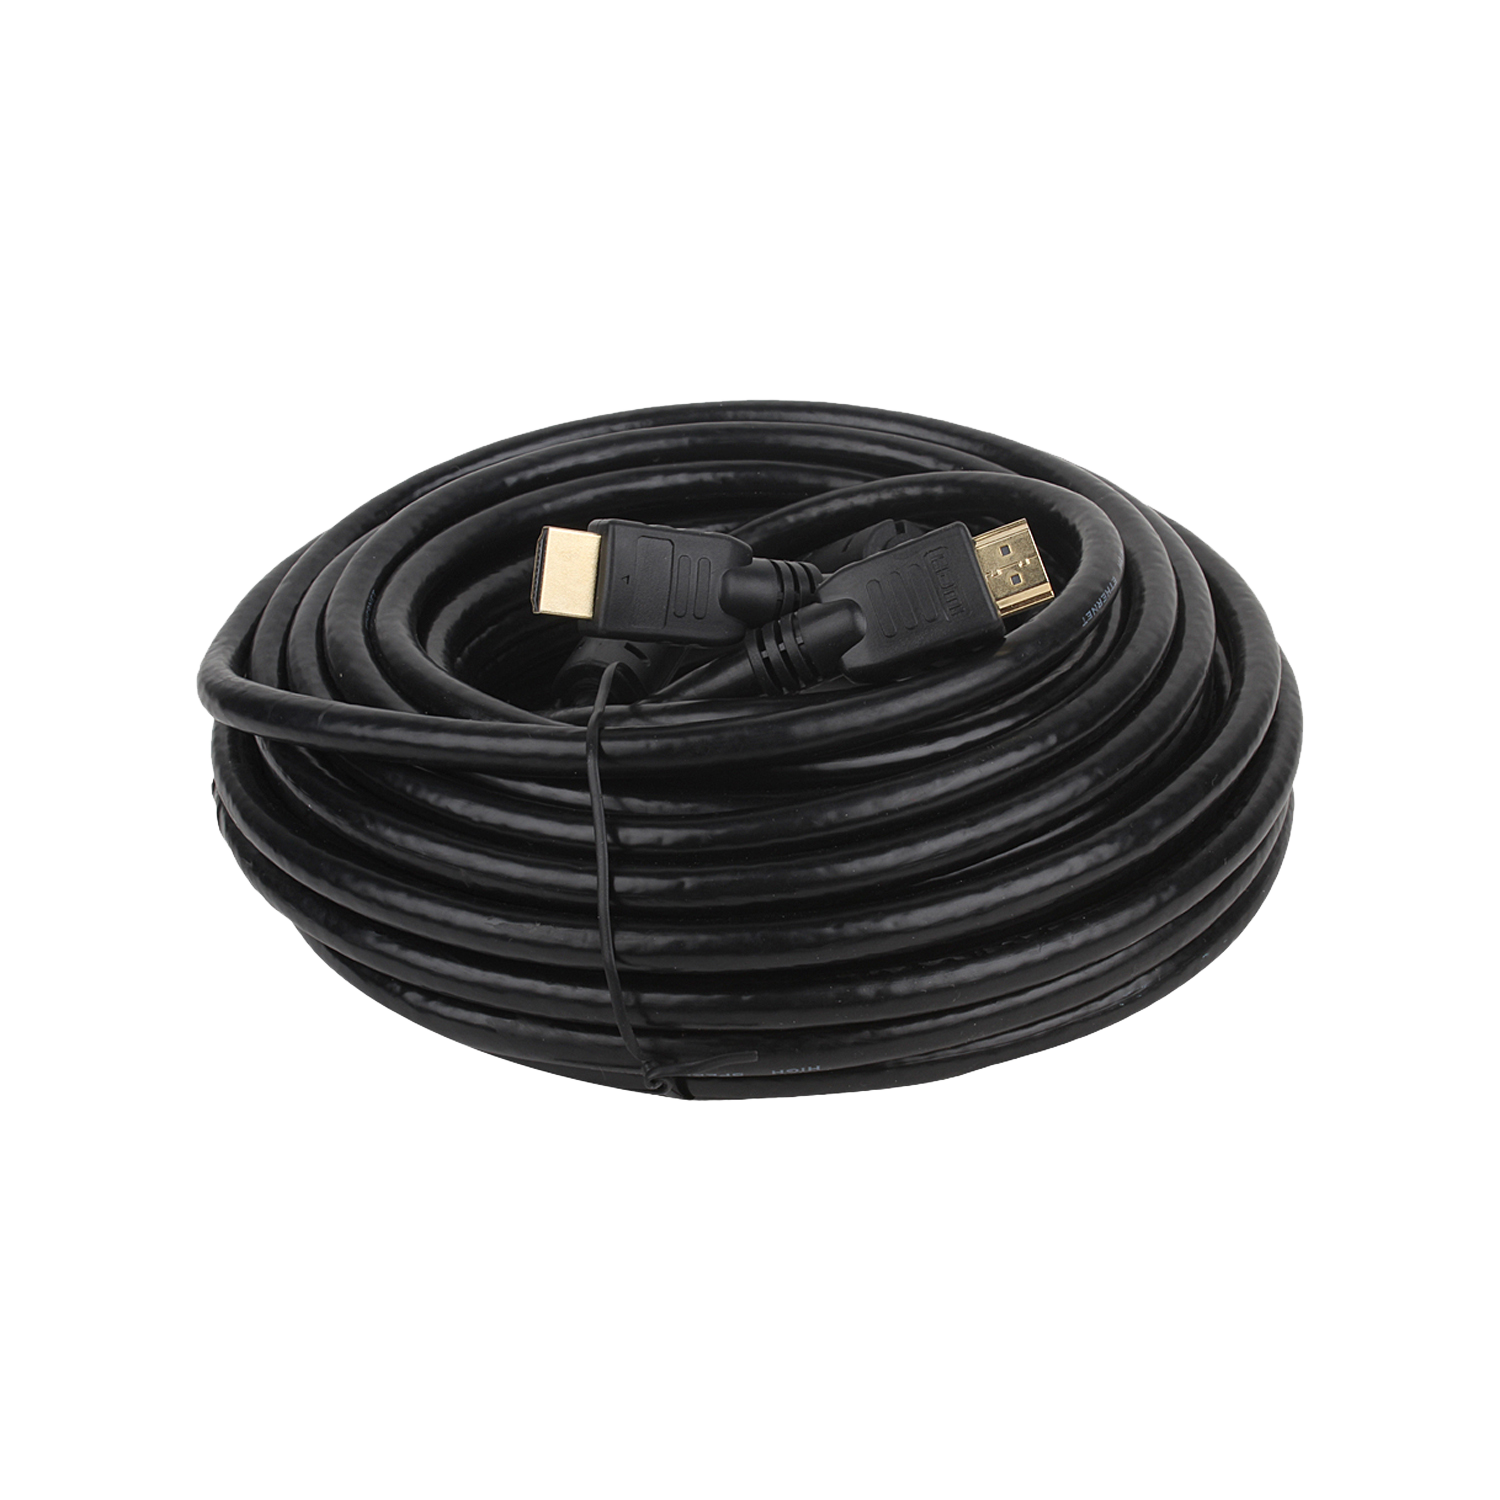 HDMI Cable- HQ- 20m, Black